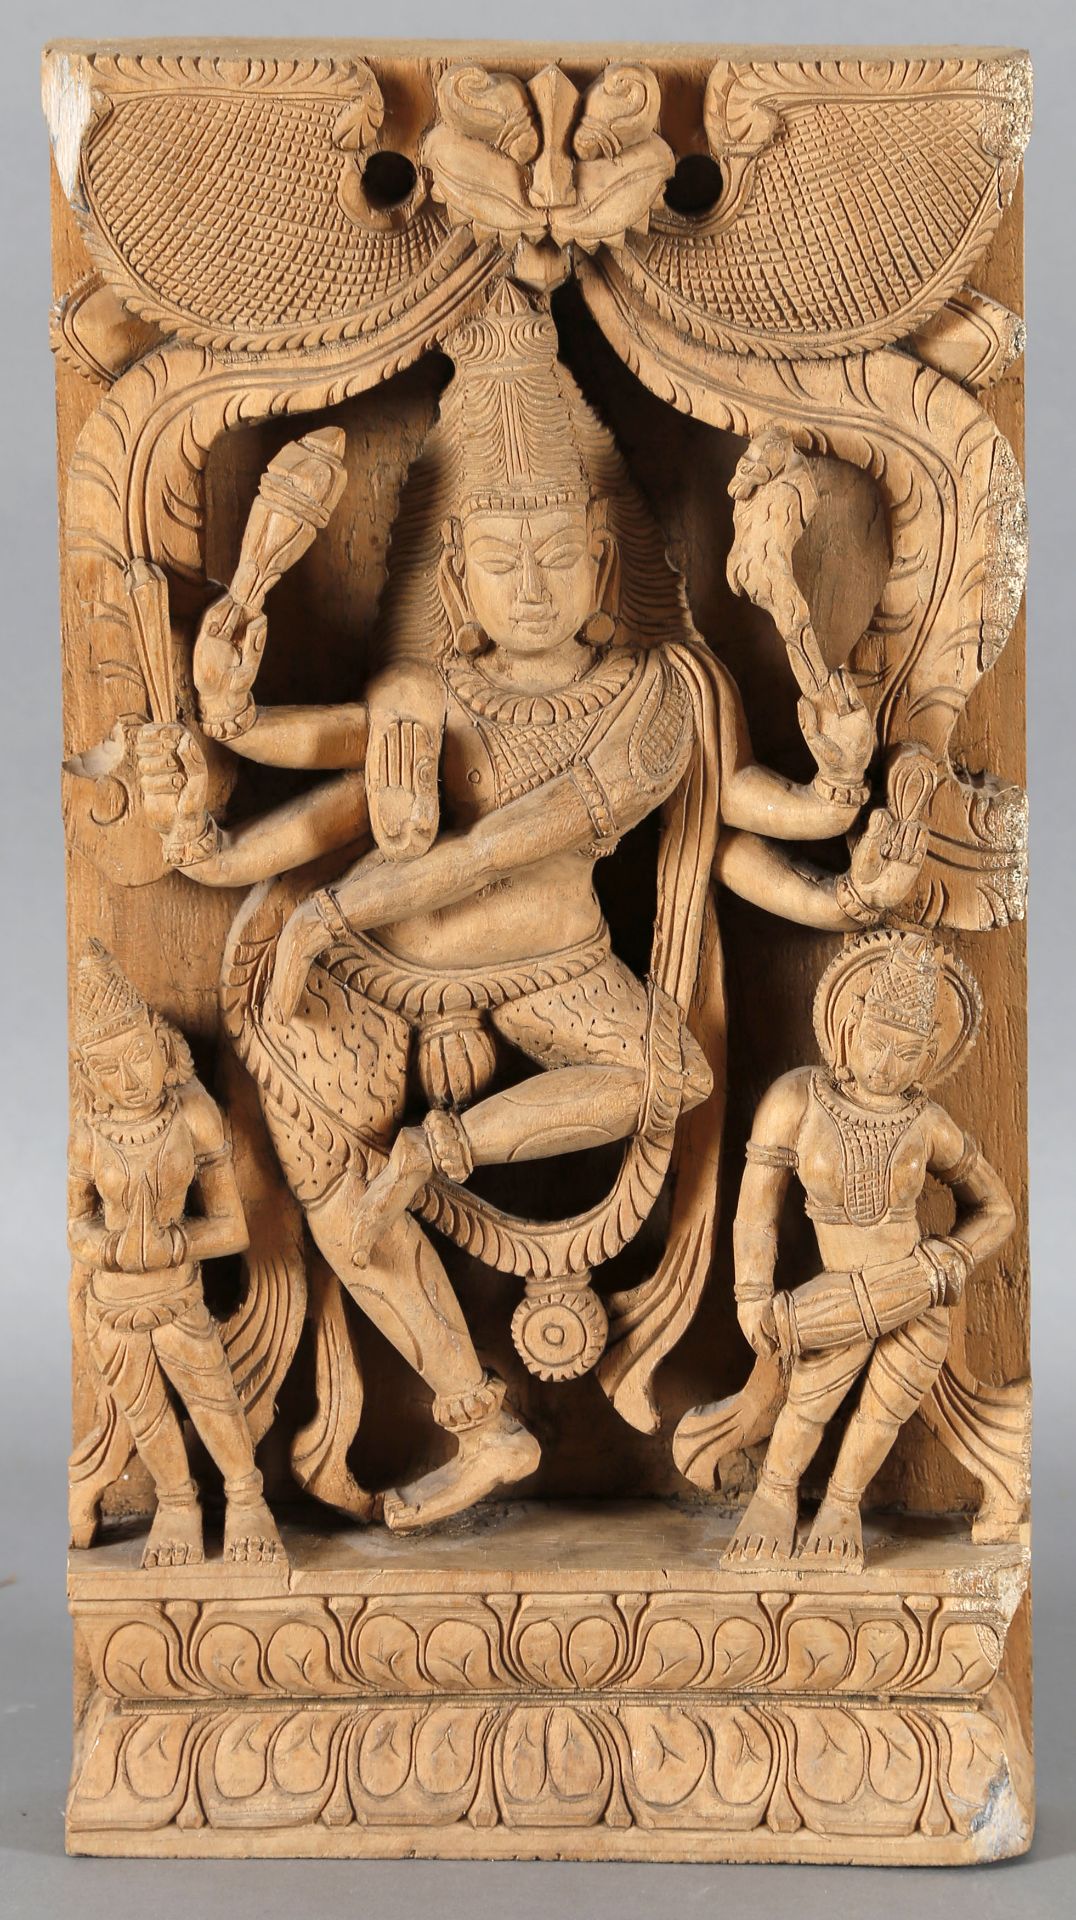 Indische Schnitzerei, 20. Jh., Relief der tanzenden Lakshmi in Begleitung zweier Assistenzfiguren